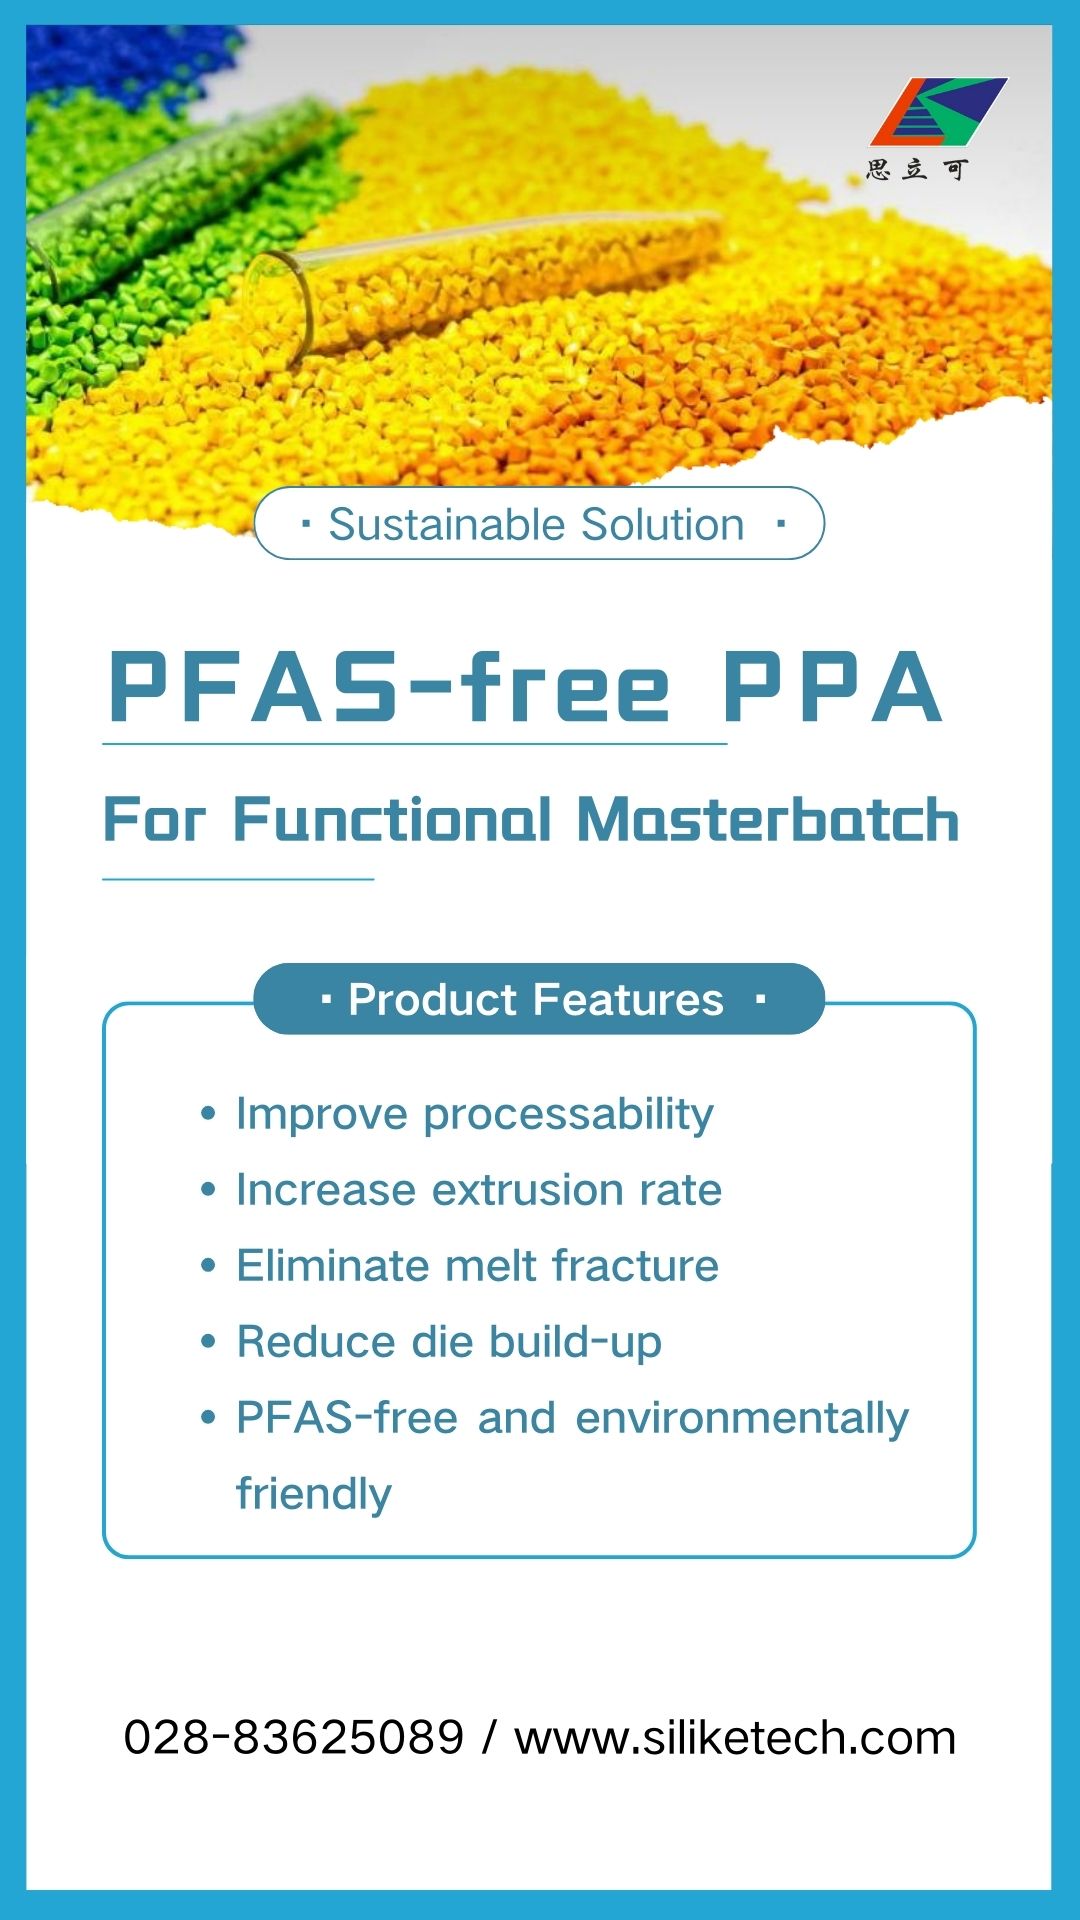 O PPA sem PFAS resolve as dificuldades do processamento funcional de masterbatch: elimina a fratura por fusão e reduz o acúmulo de matrizes.